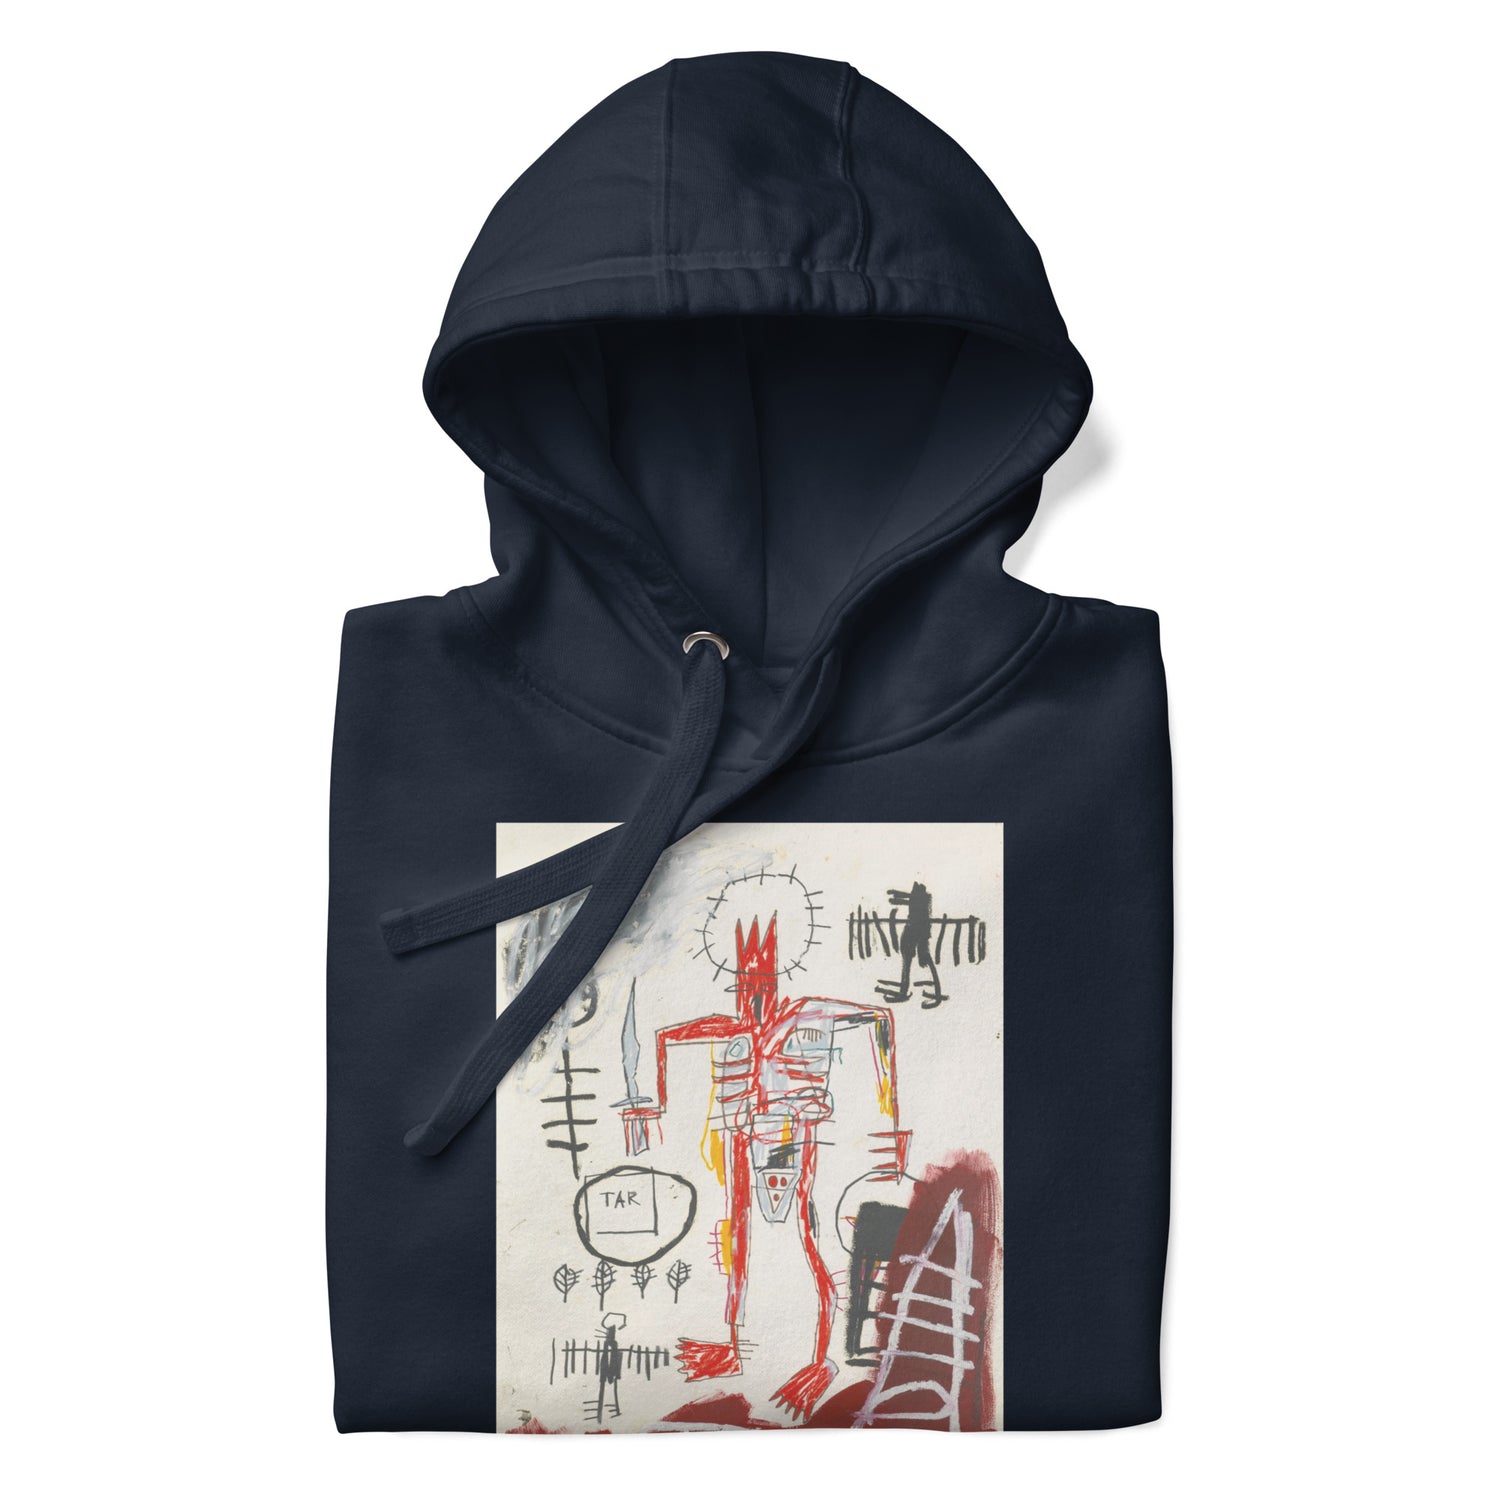 Jean-Michel Basquiat "Untitled" Artwork Printed Premium Streetwear Sweatshirt Hoodie Navy Blue